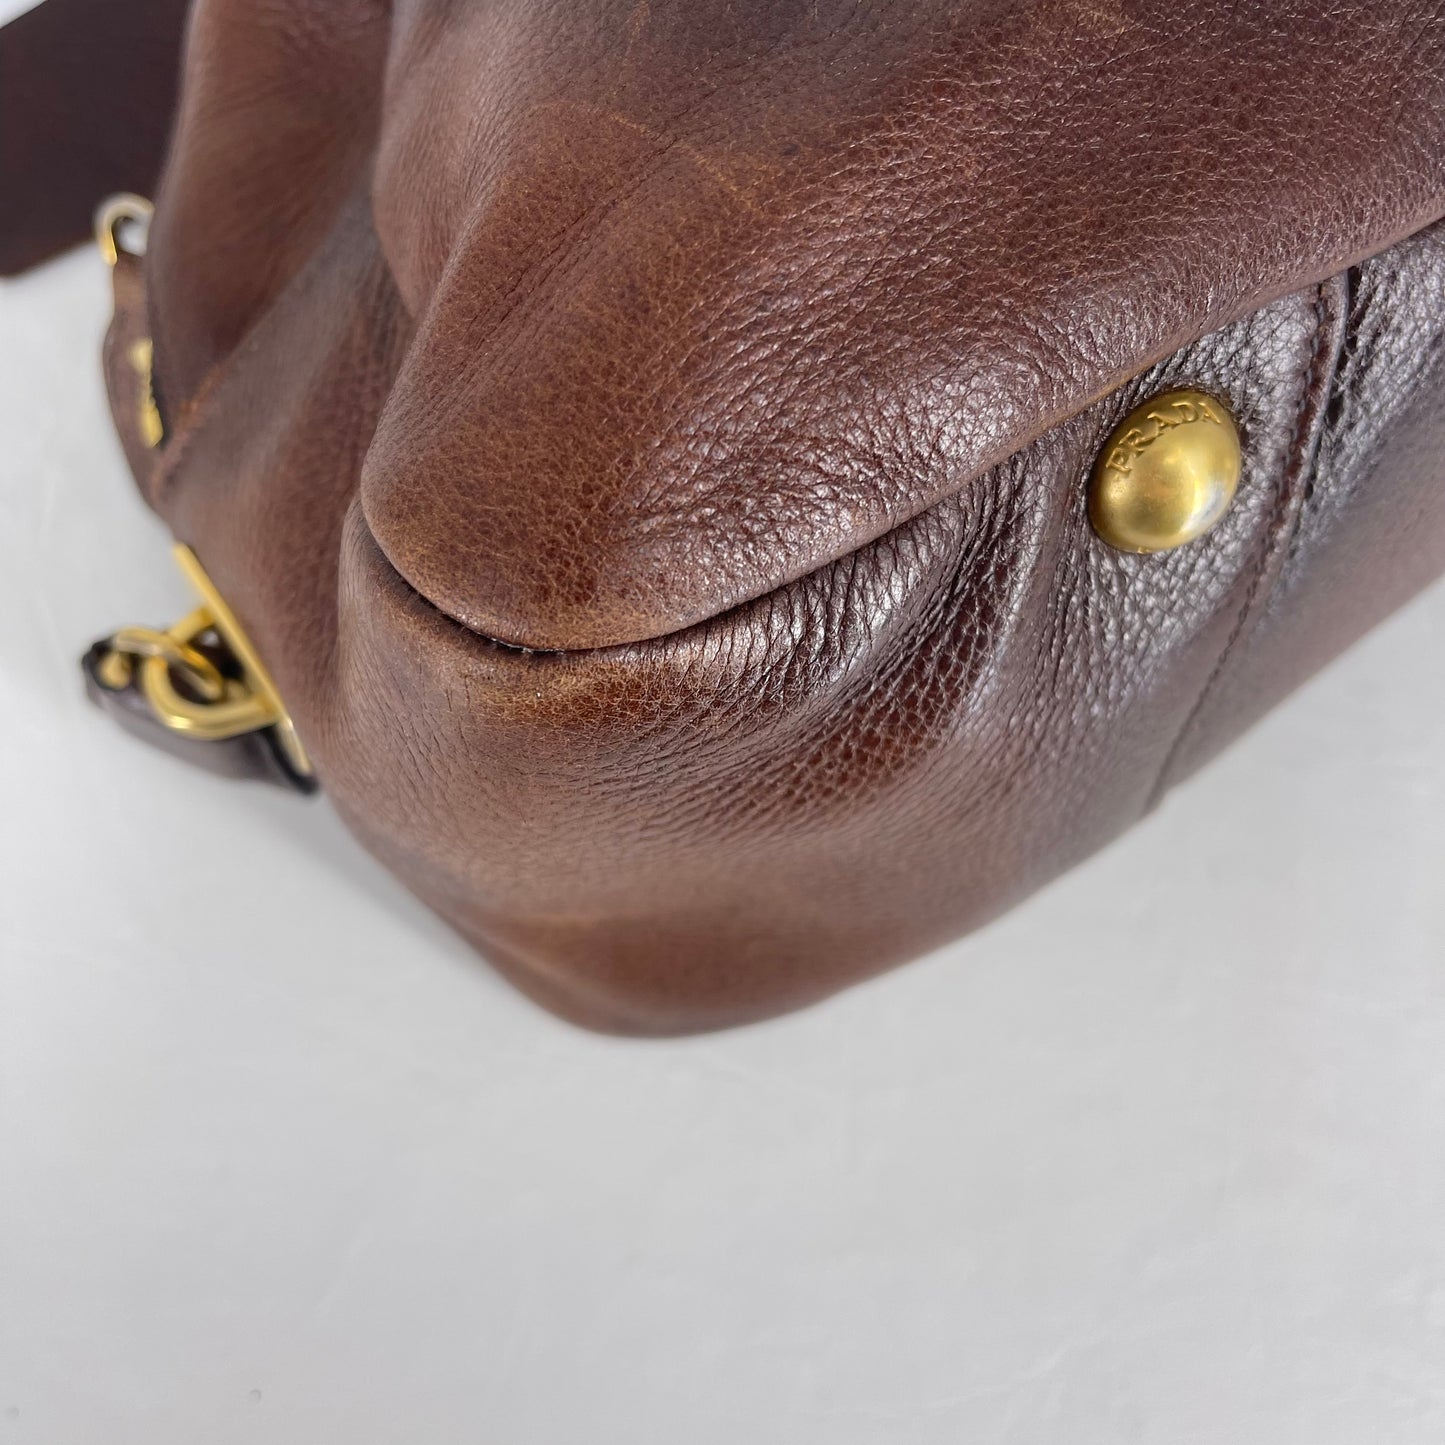 Authentic Prada Brown Deerskin Shoulder Bag